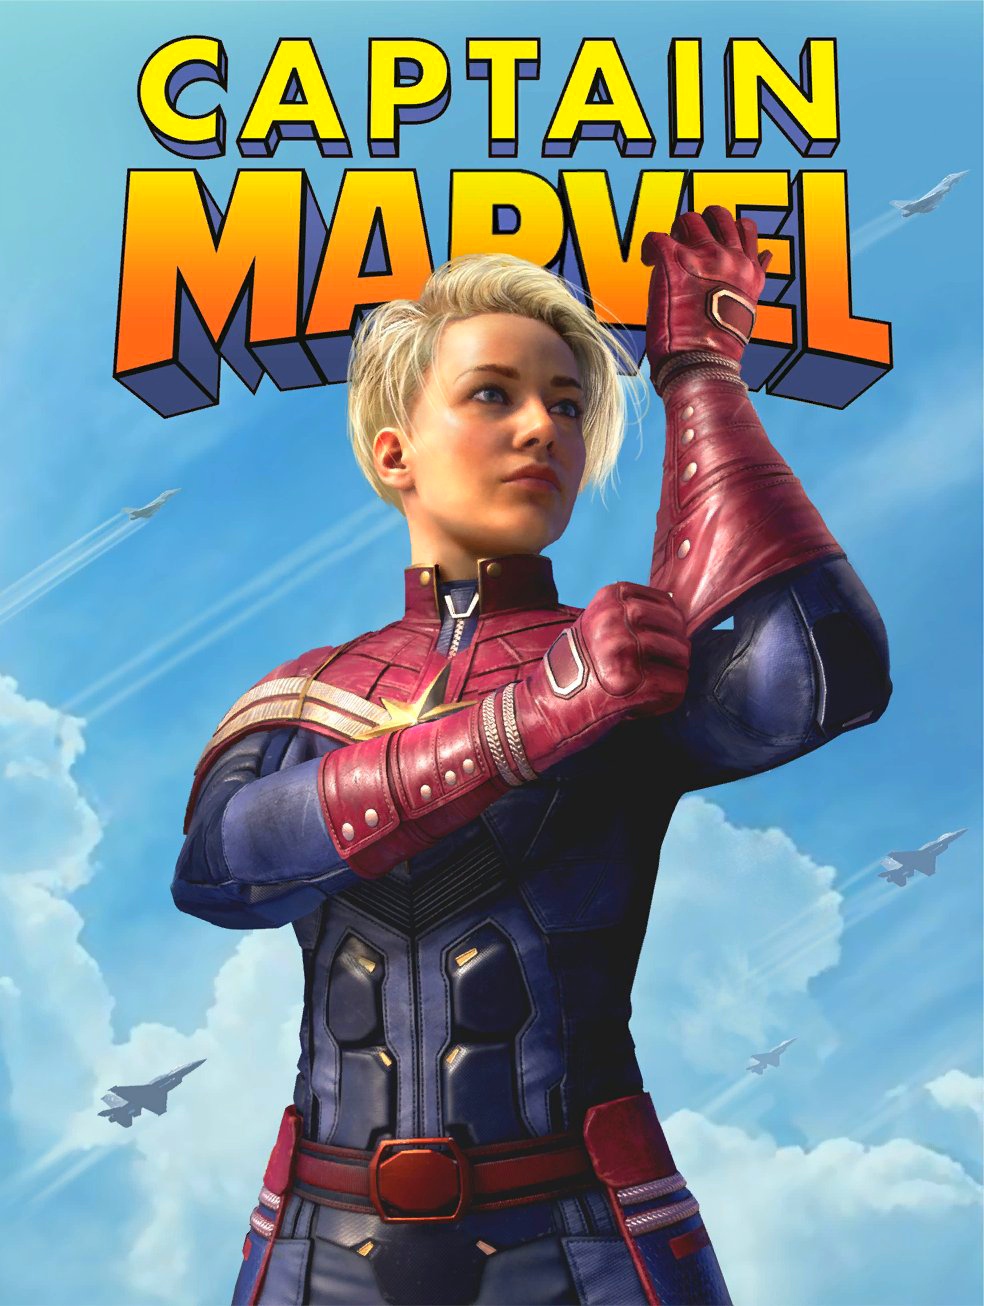 Marvel - Avengers